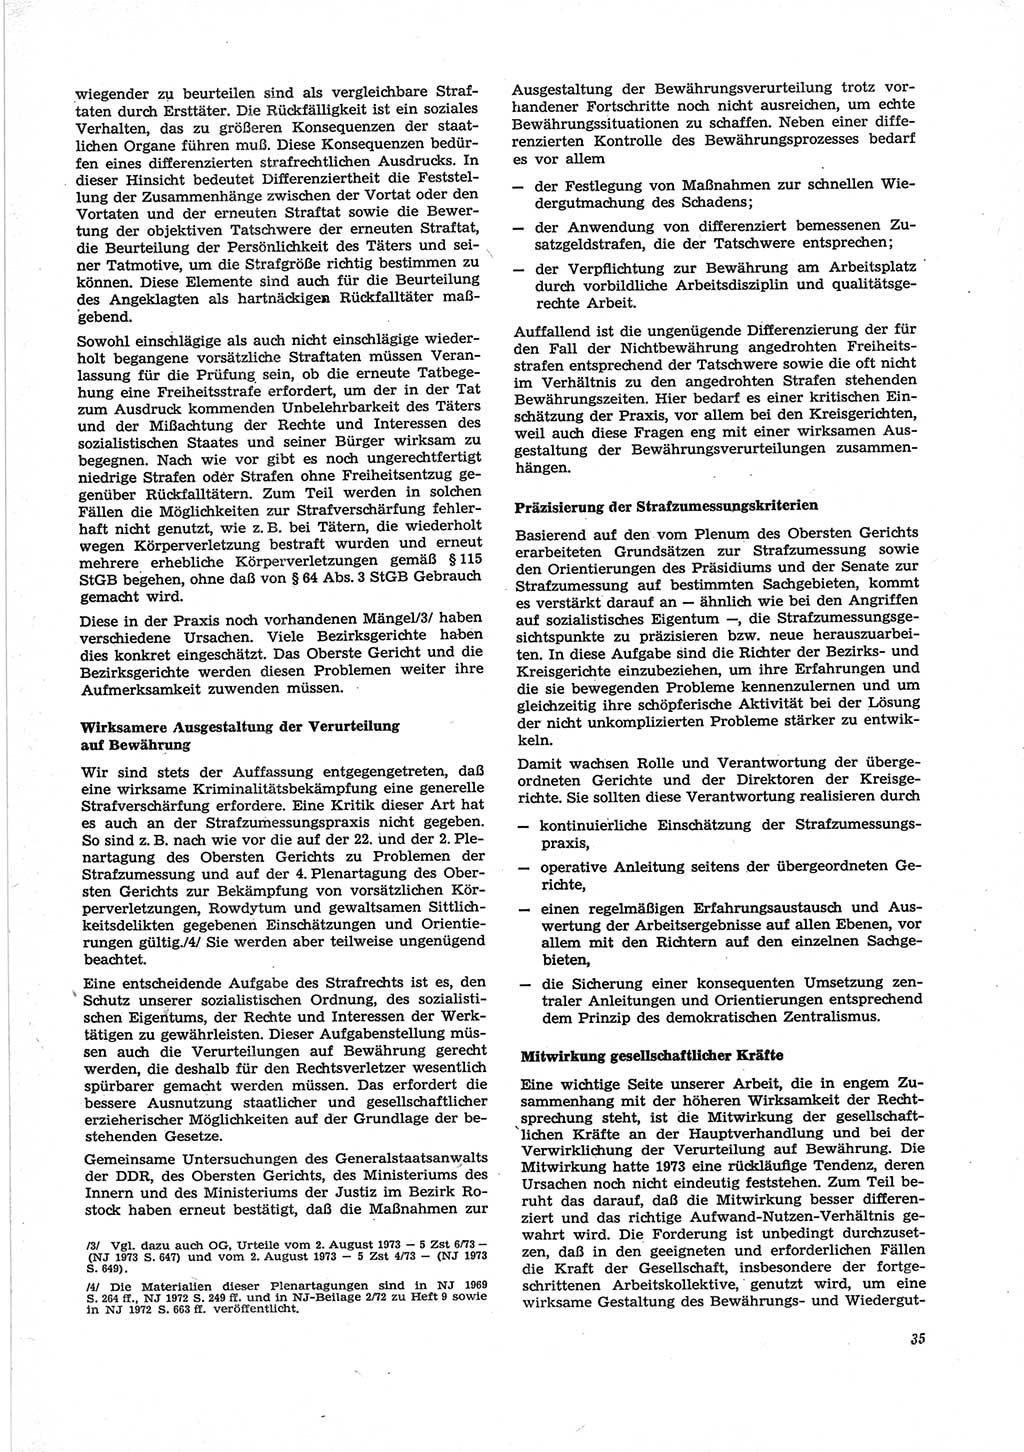 Neue Justiz (NJ), Zeitschrift für Recht und Rechtswissenschaft [Deutsche Demokratische Republik (DDR)], 28. Jahrgang 1974, Seite 35 (NJ DDR 1974, S. 35)